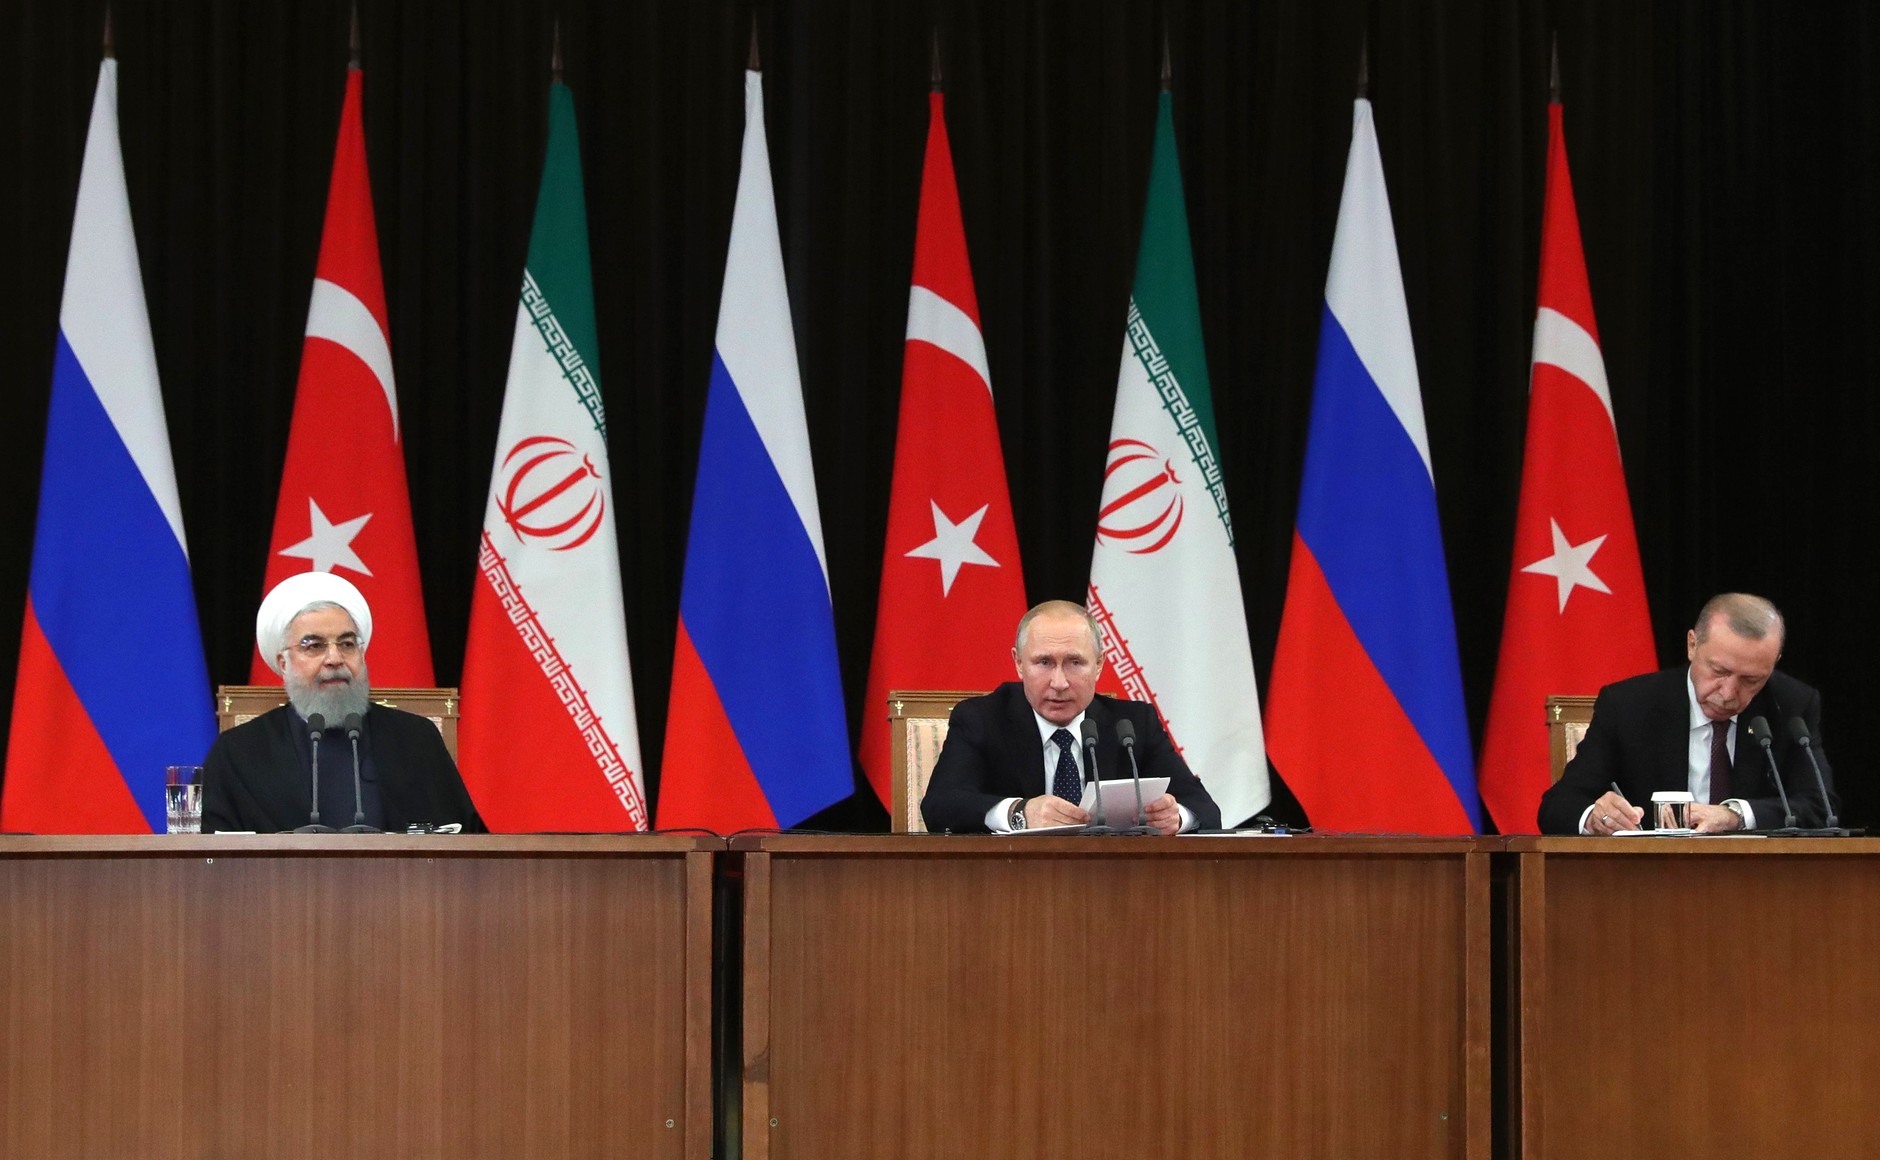 В Сочи обсудят урегулирование и конституцию Сирии в рамках 15-ой встречи в астанинском формате